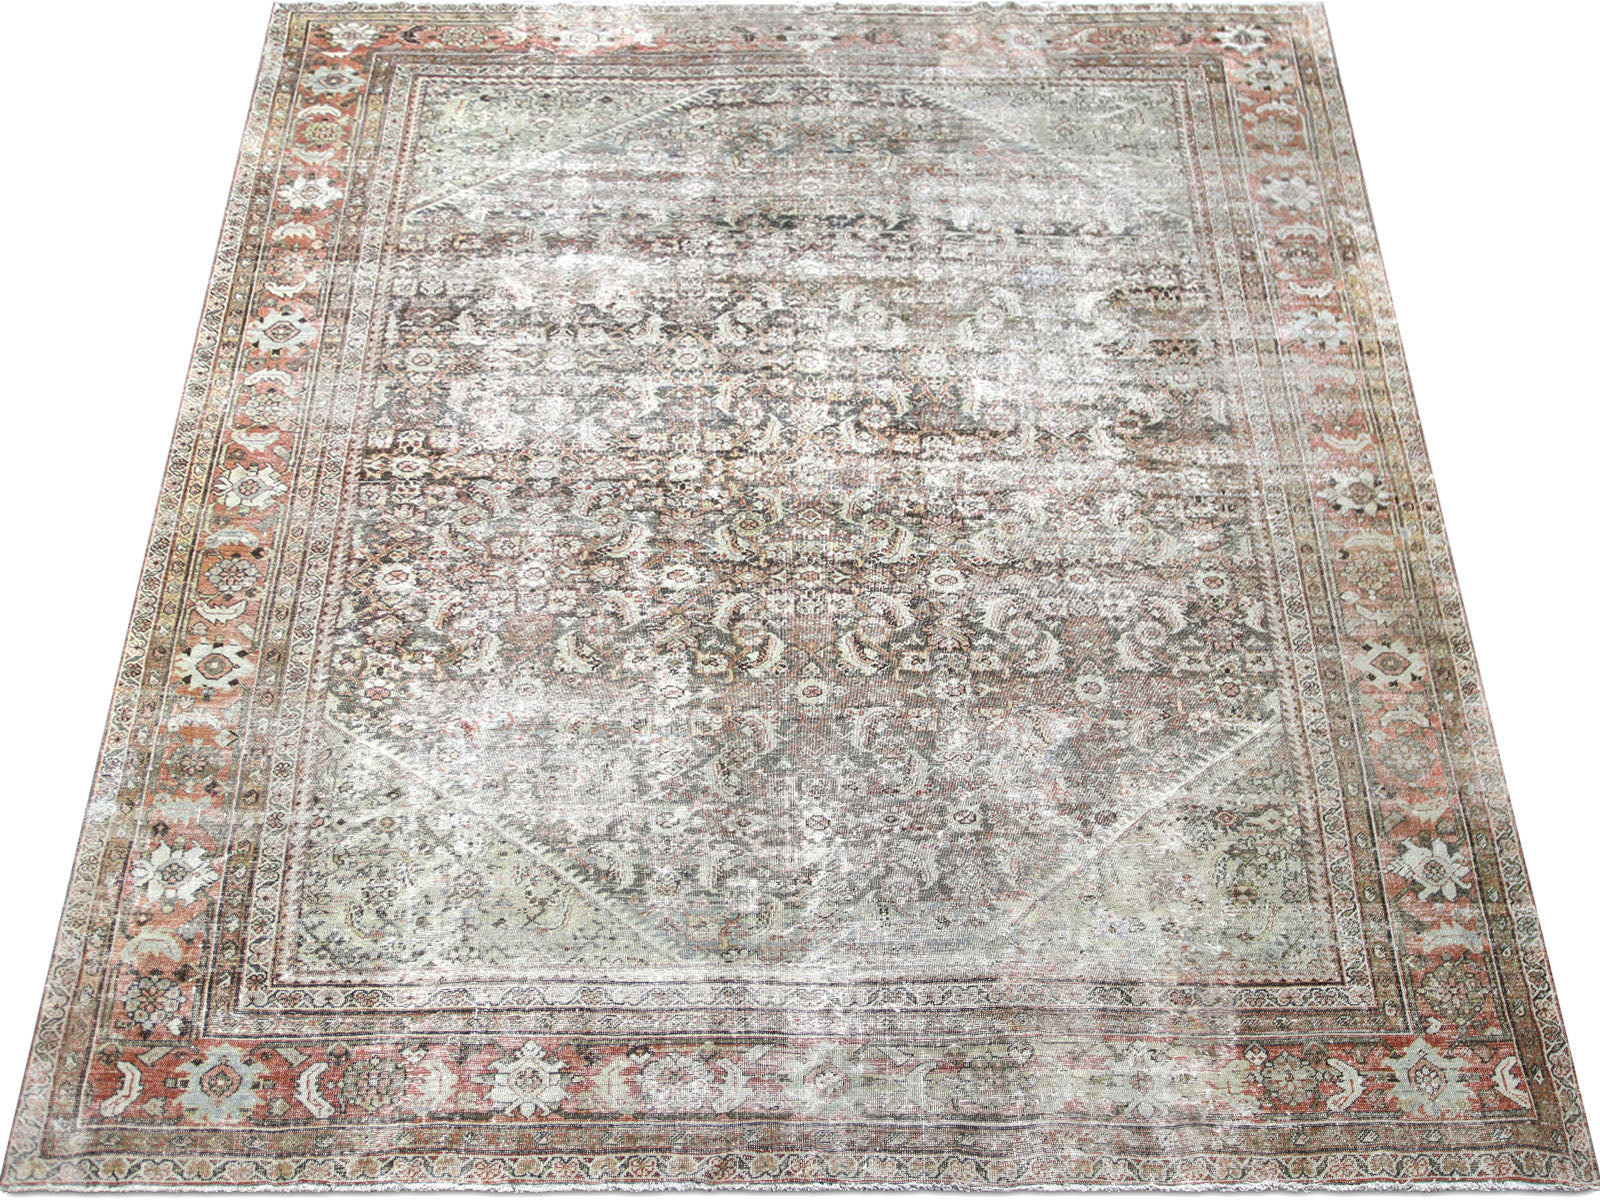 Semi Antique Persian Mahal Rug - 9'9" x 12'11"